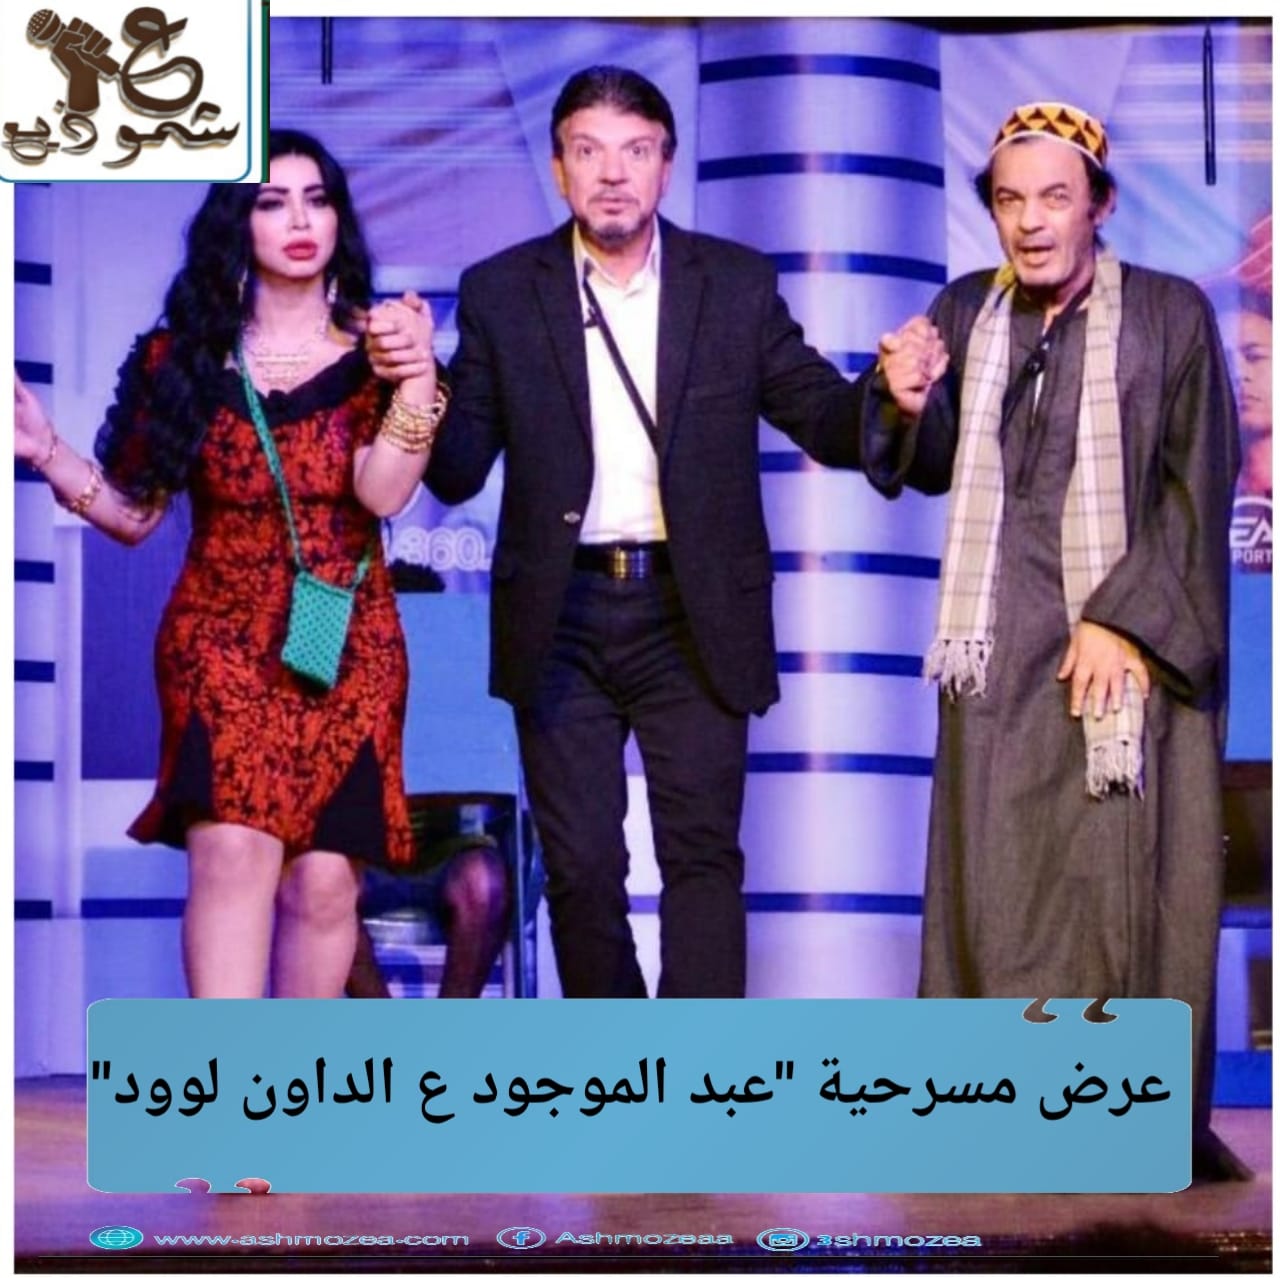 عرض مسرحية "عبد الموجود ع الداون لوود"